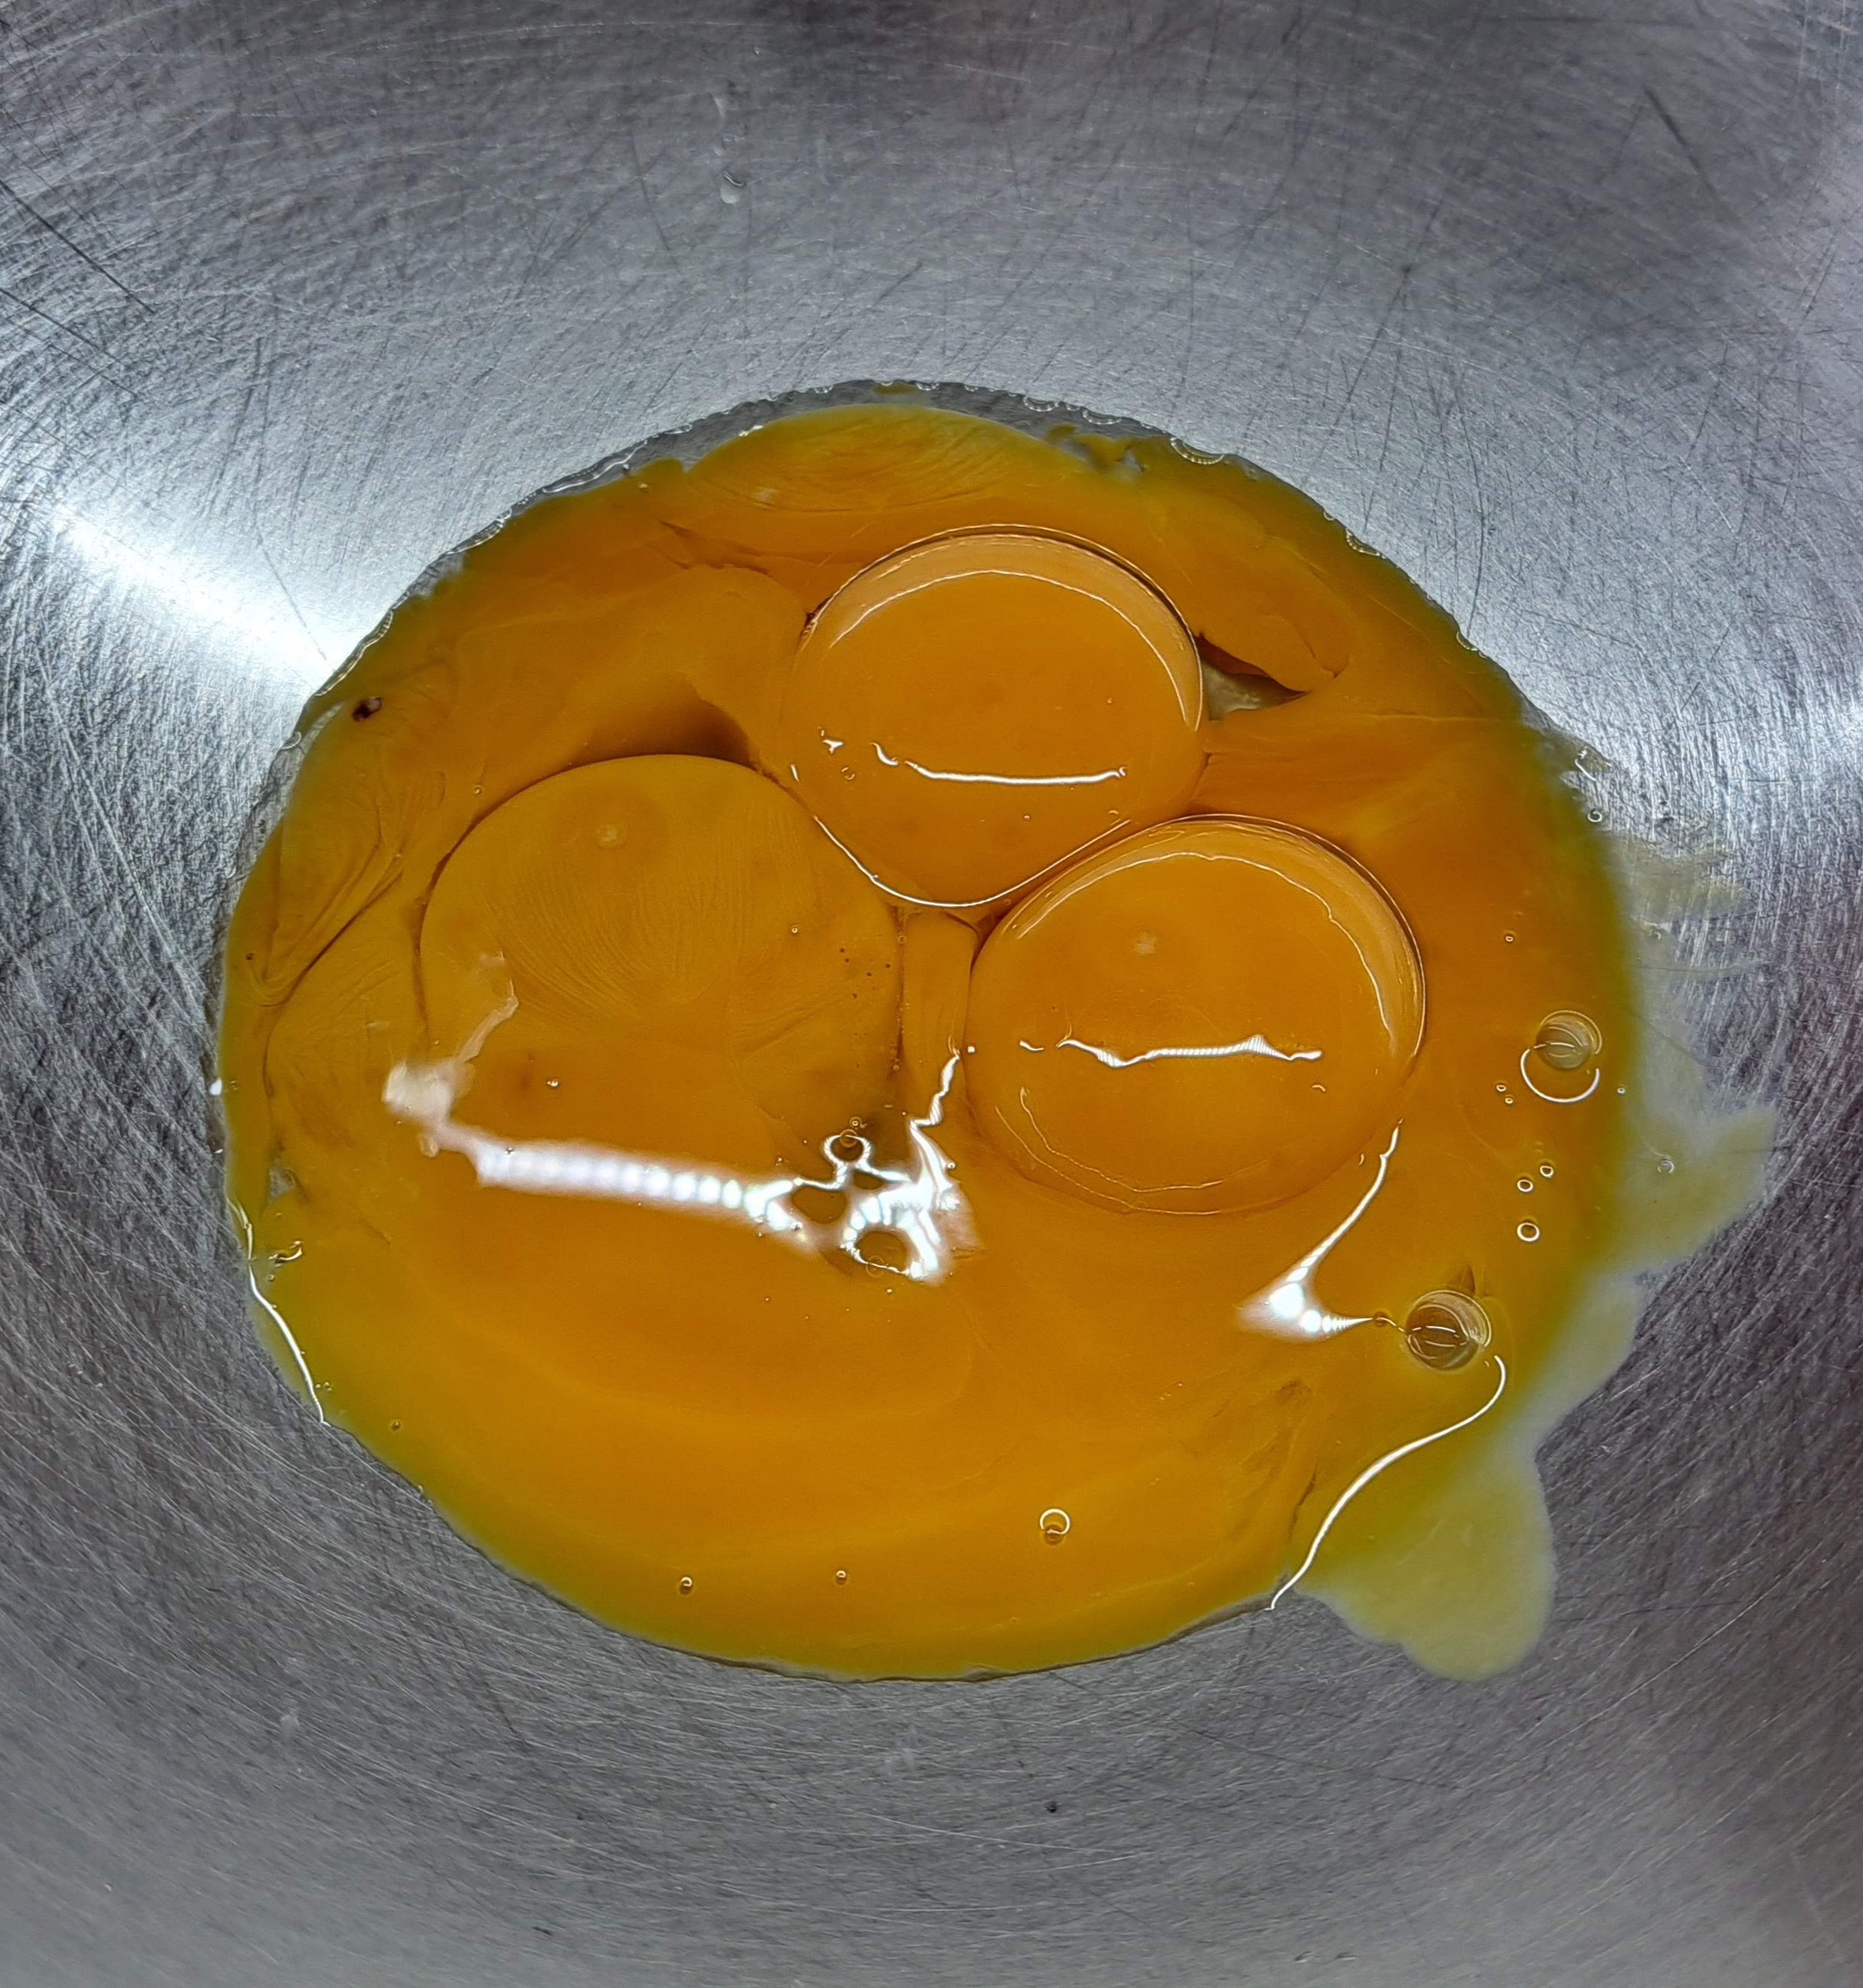 Slepačie vajcia oddelíme žĺtky a bielky